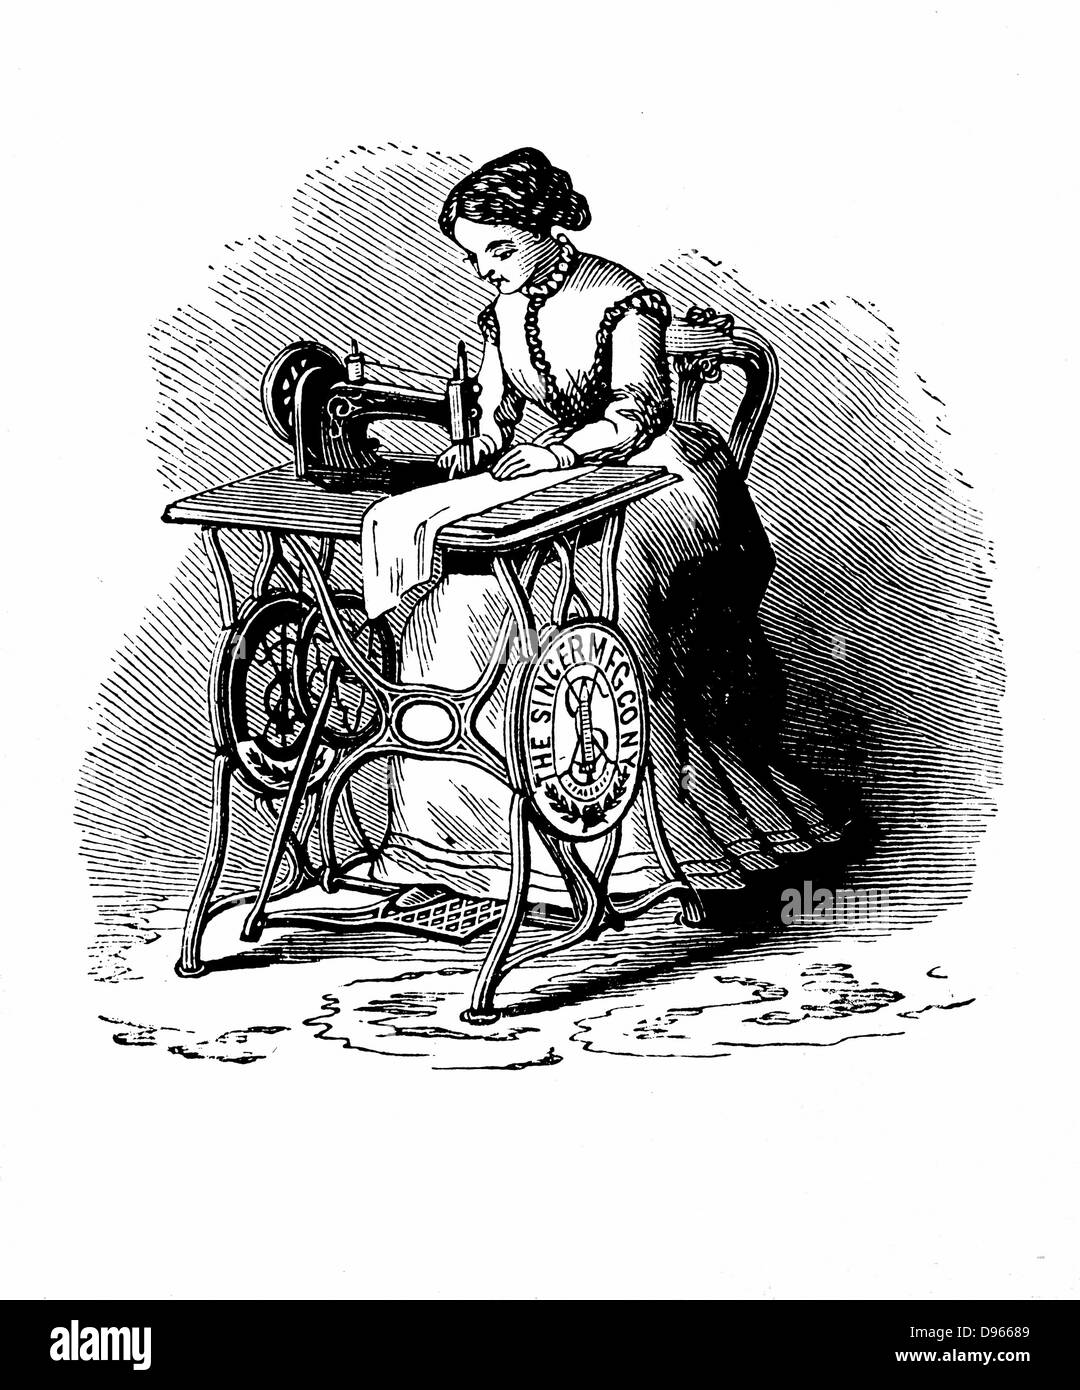 Macchina da cucire da Isaac Merritt Singer (1811-1875): versione a pedale. Da 'Genius ricompensati o la storia della macchina da cucire', New York, 1880. Incisione su legno. Foto Stock